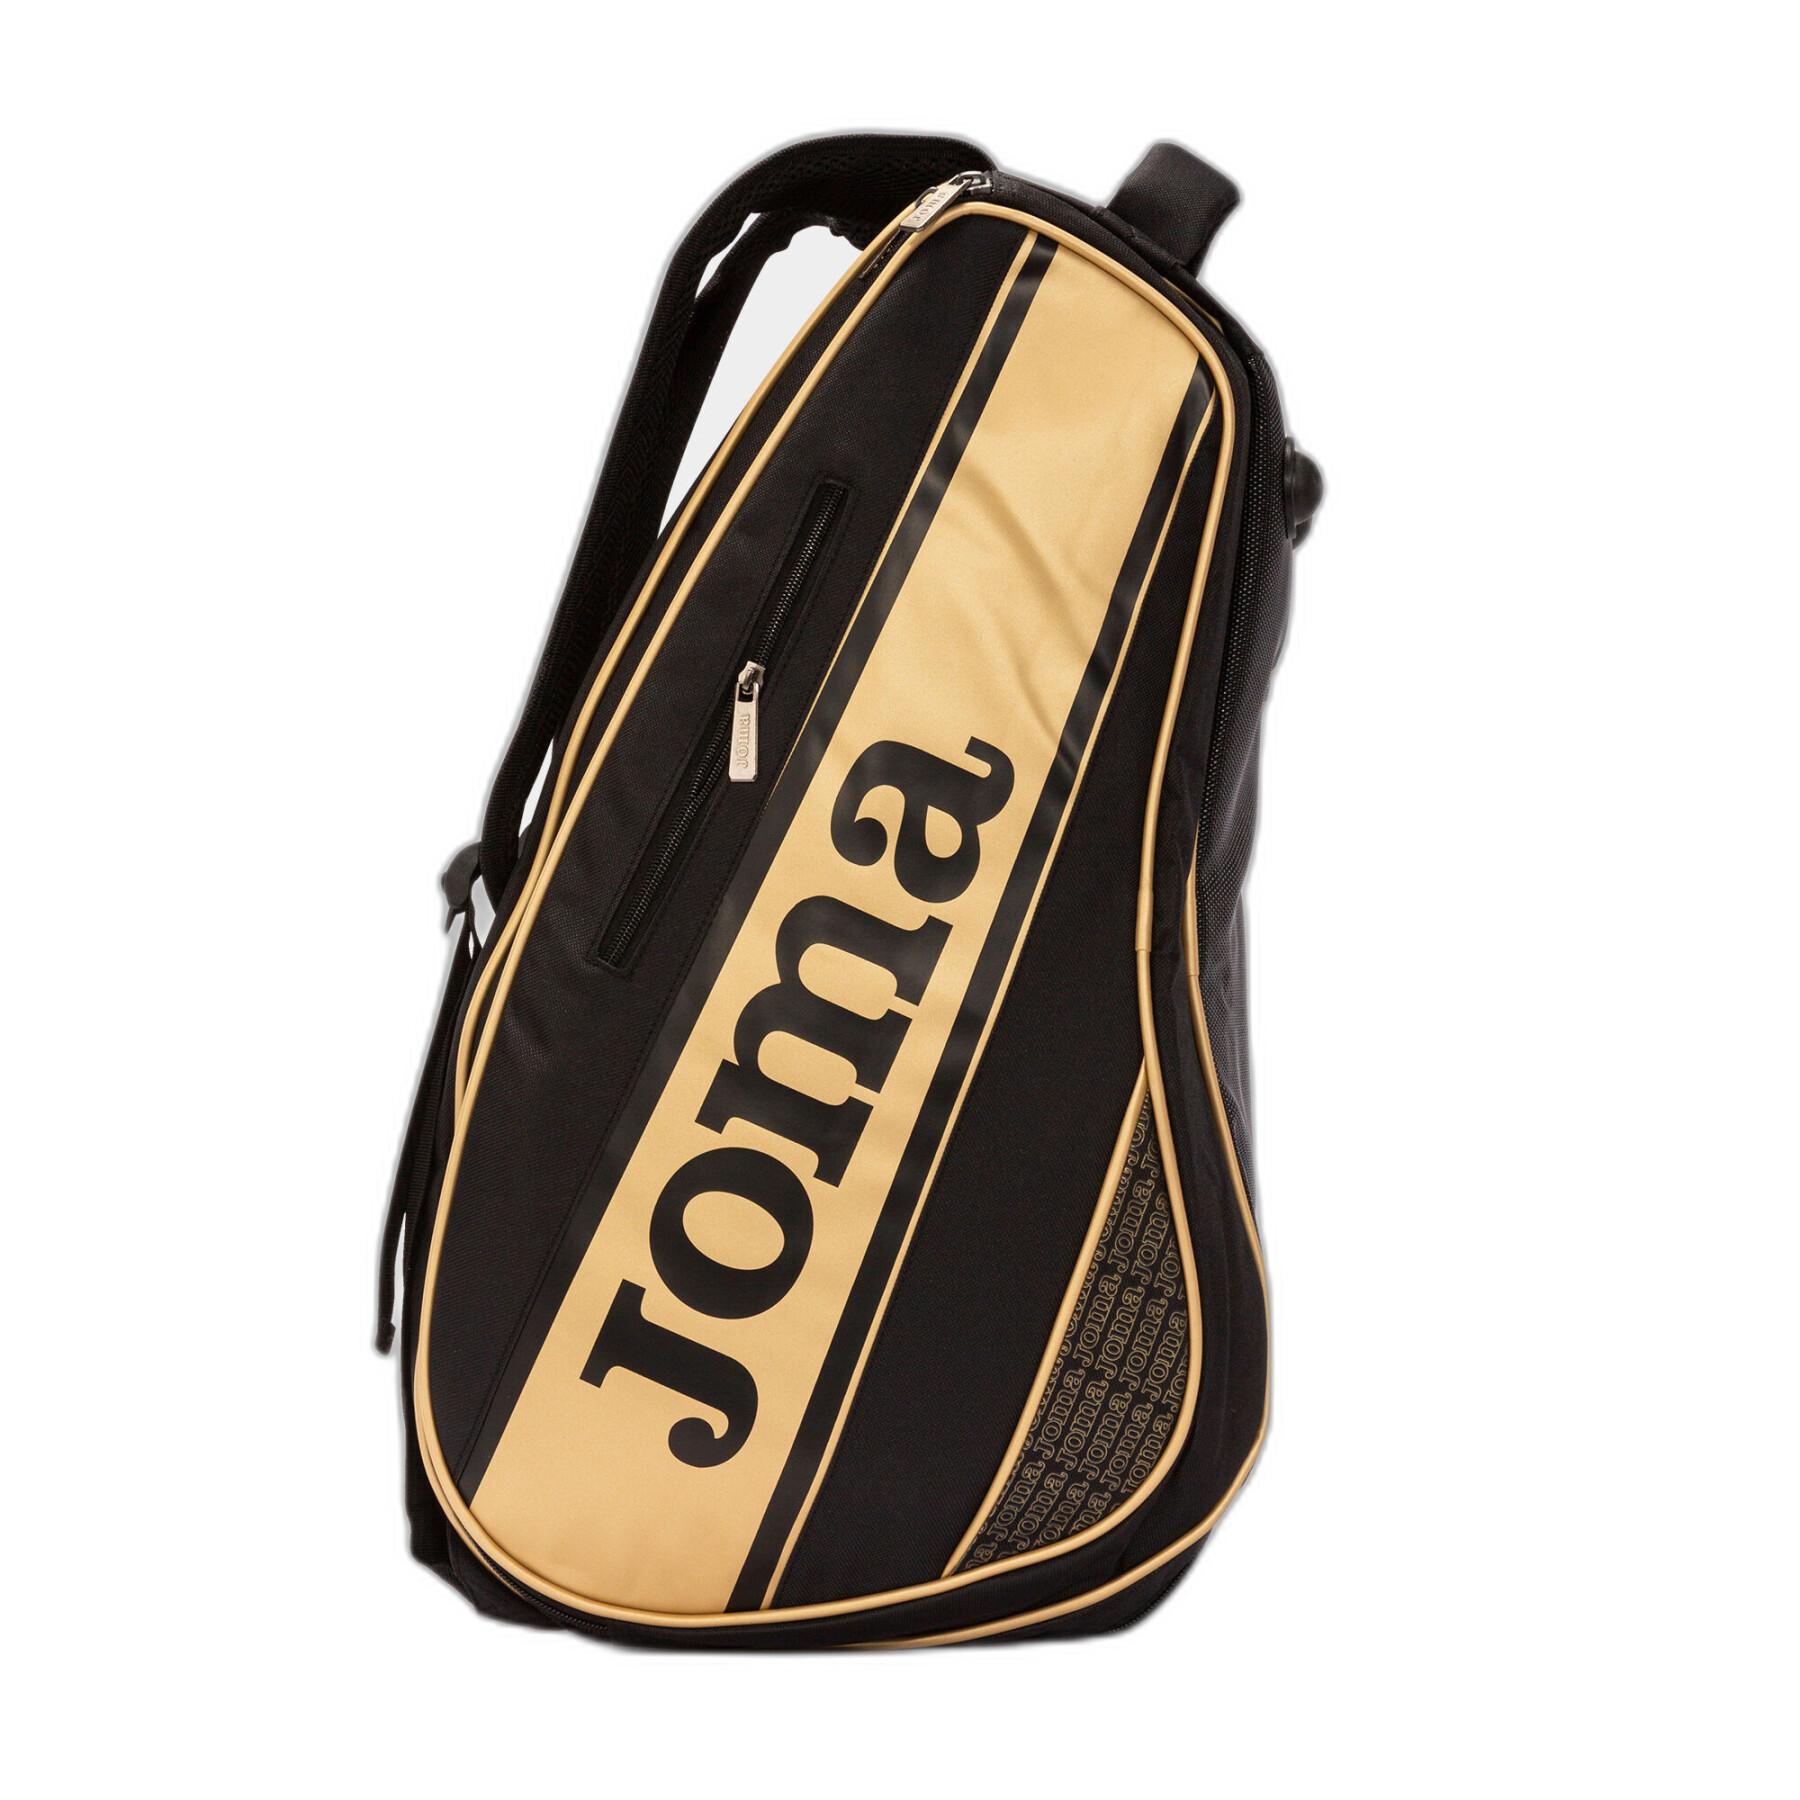 Padel racket väska Joma Gold Pro